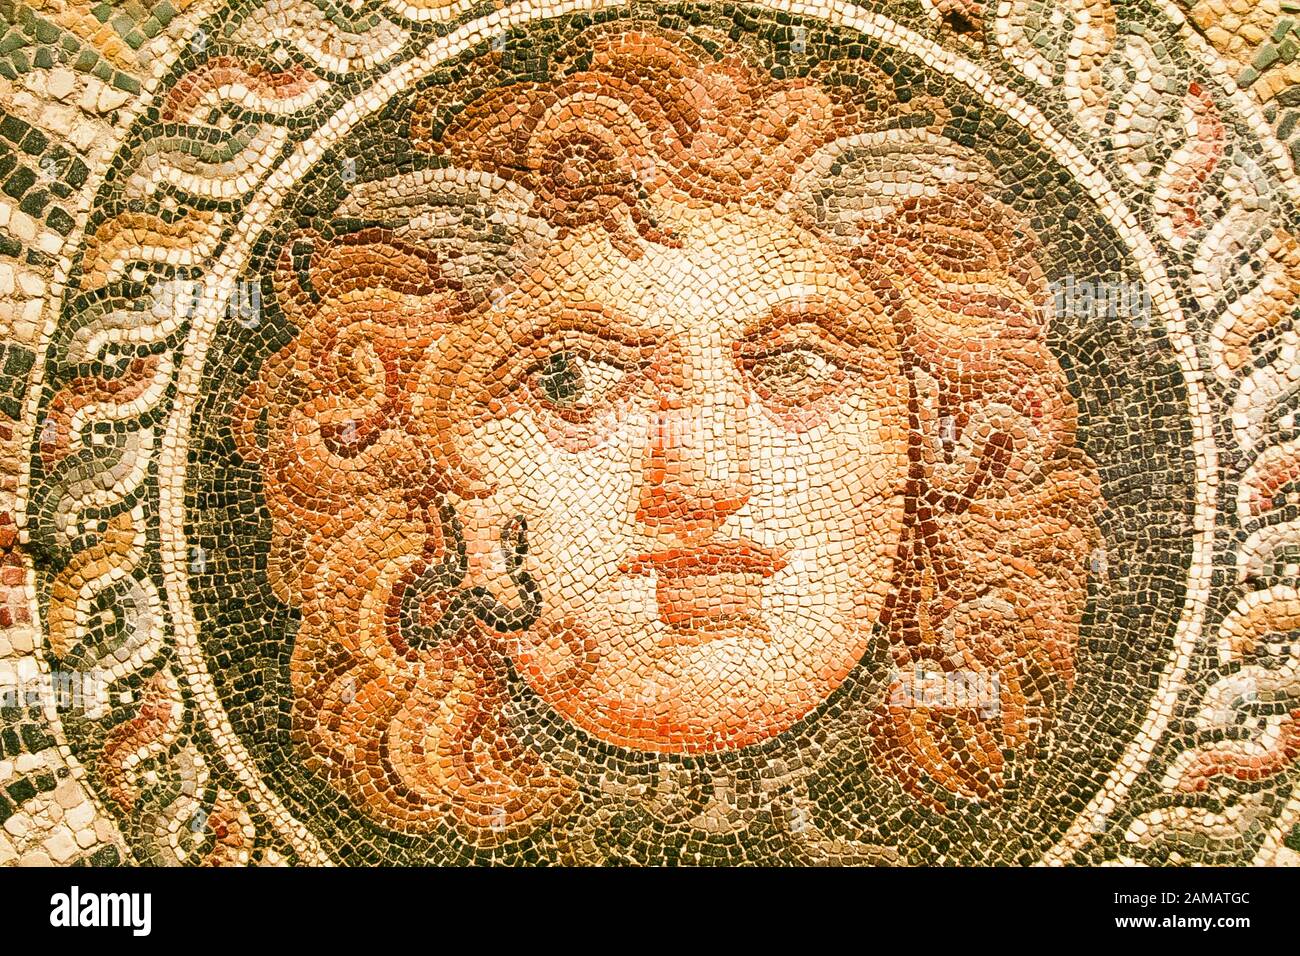 Egypte, Alexandrie, Musée National, détail d'une mosaïque représentant un masque de Medusa, 2ème siècle après Jésus-Christ, trouvé pendant les fouilles du théâtre de Diana. Banque D'Images